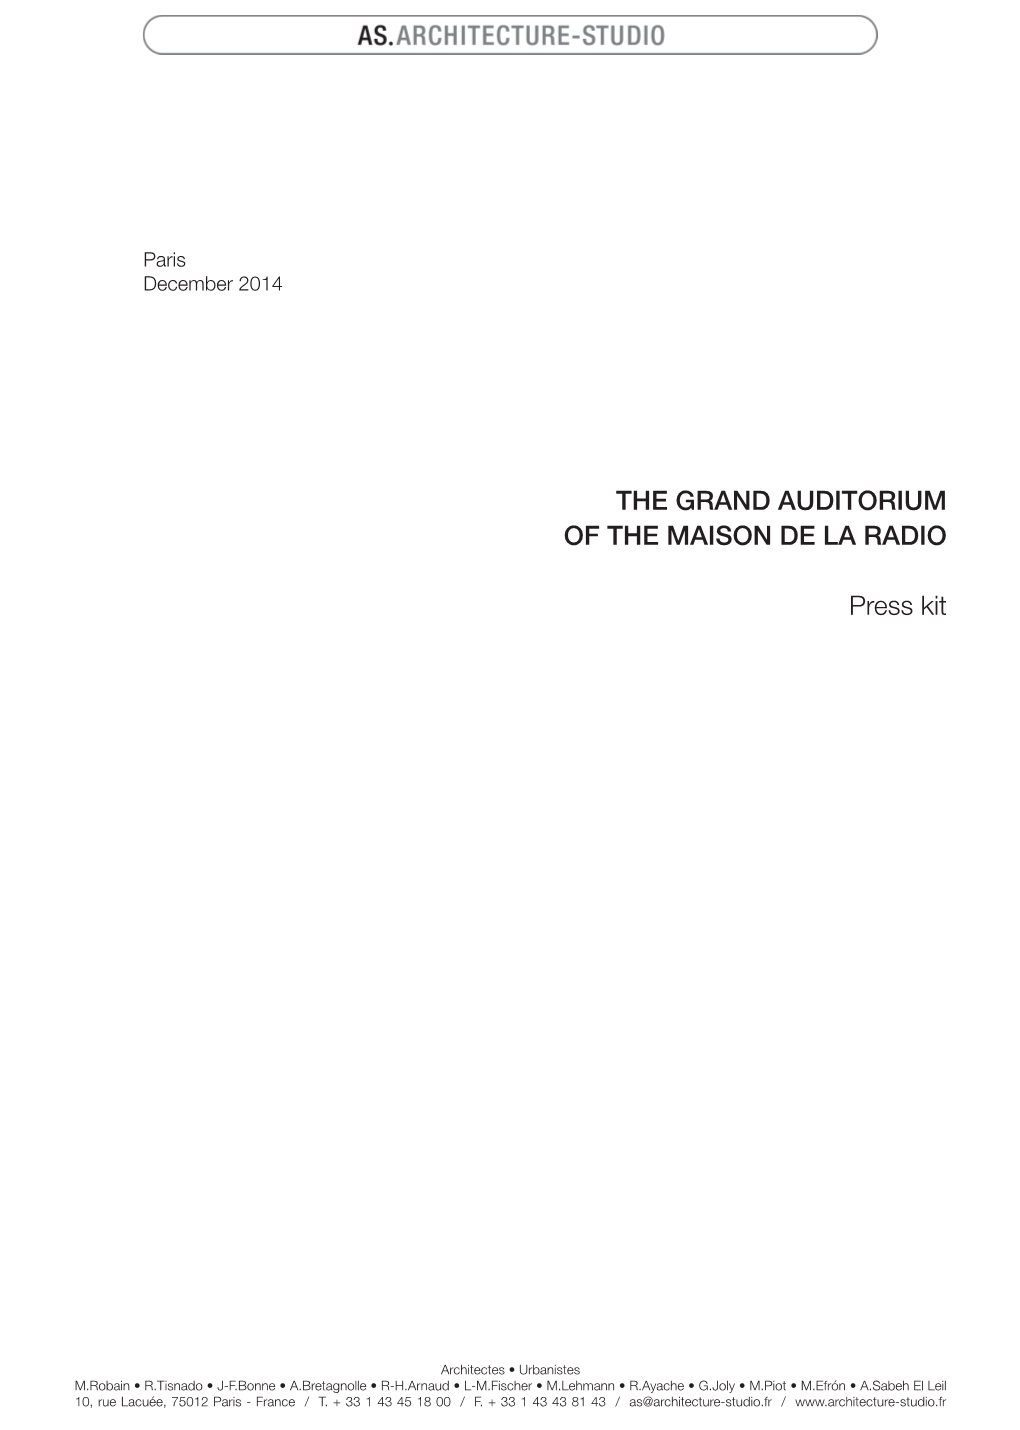 THE GRAND AUDITORIUM of the MAISON DE LA RADIO Press